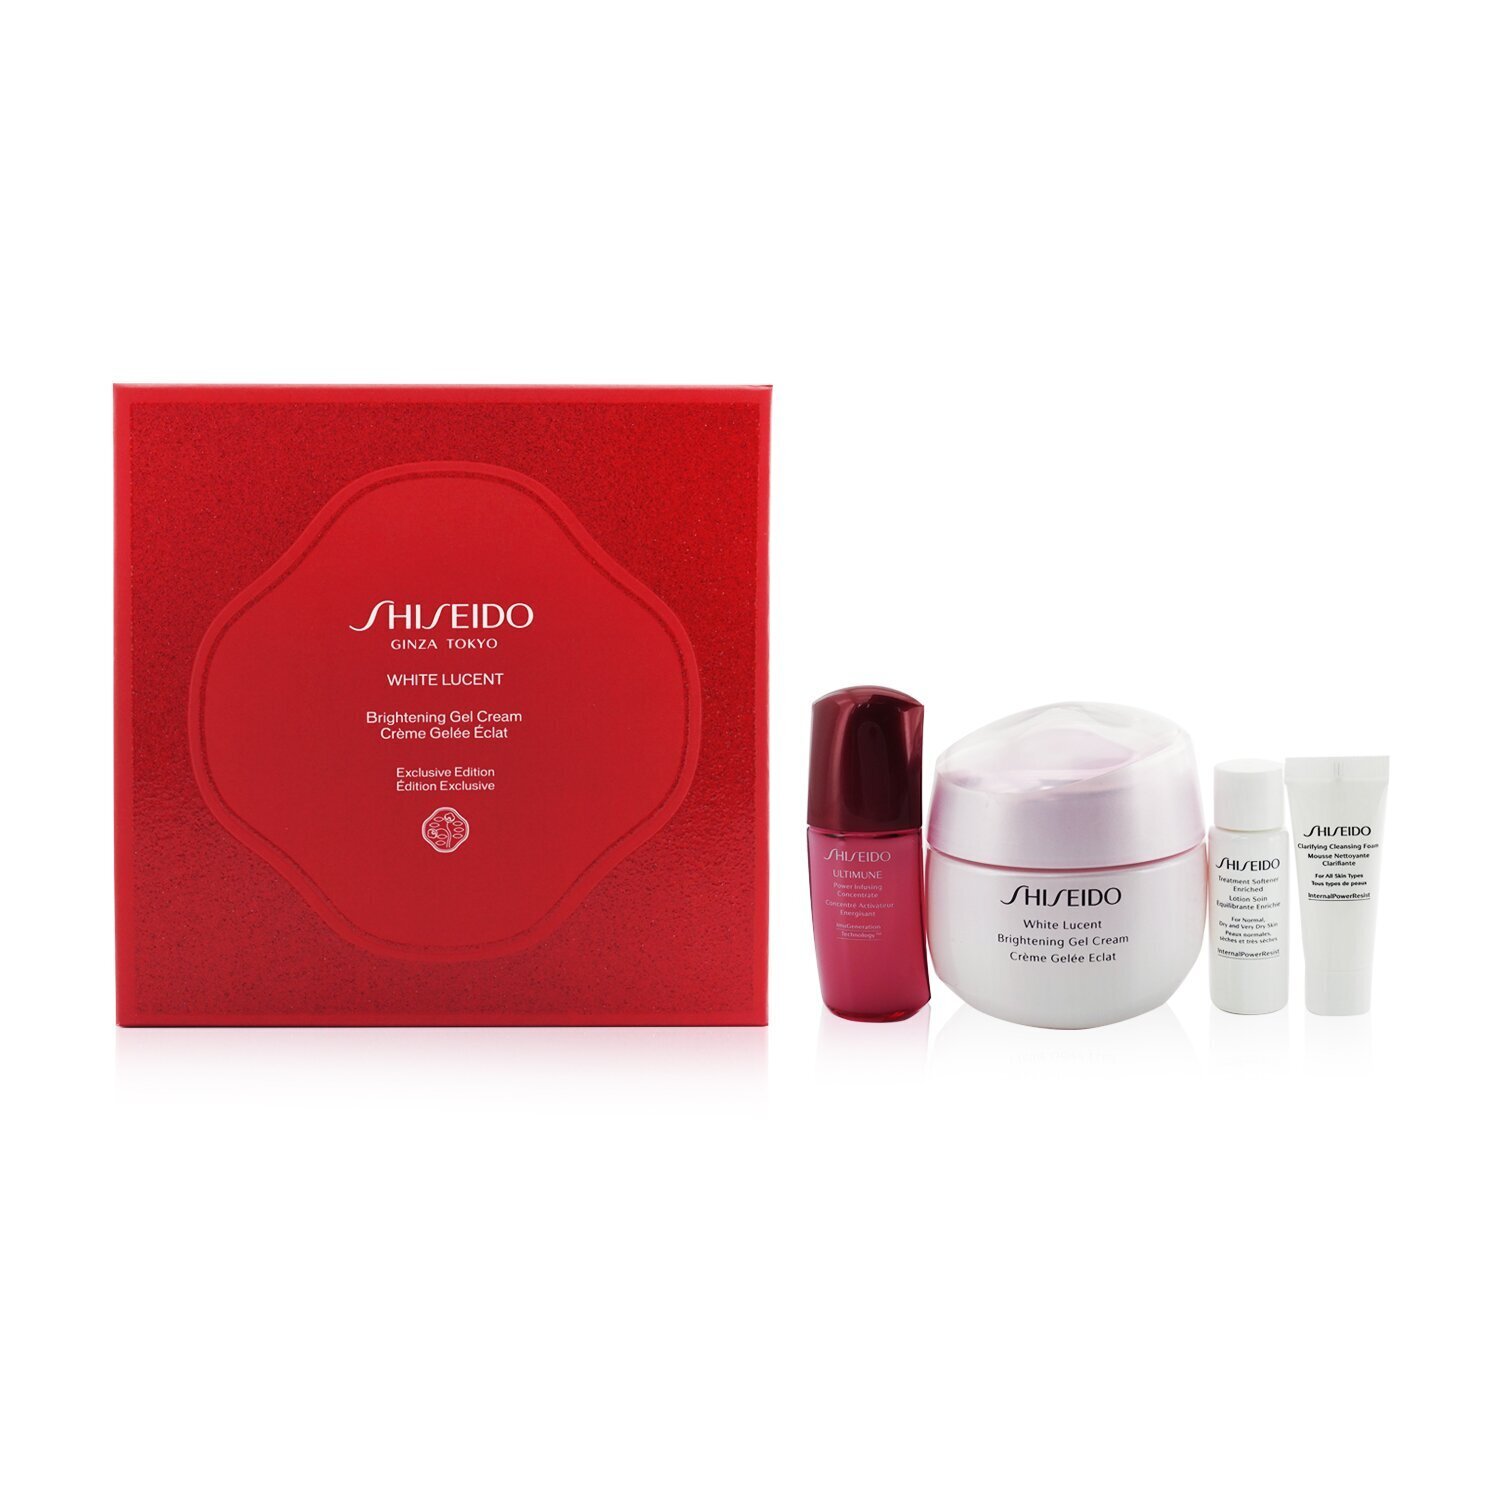 資生堂 Shiseido - 美透白假日套裝：啫喱霜 50ml + 潔面泡沫 5ml + 柔膚水 7ml + 超強濃縮液 10ml